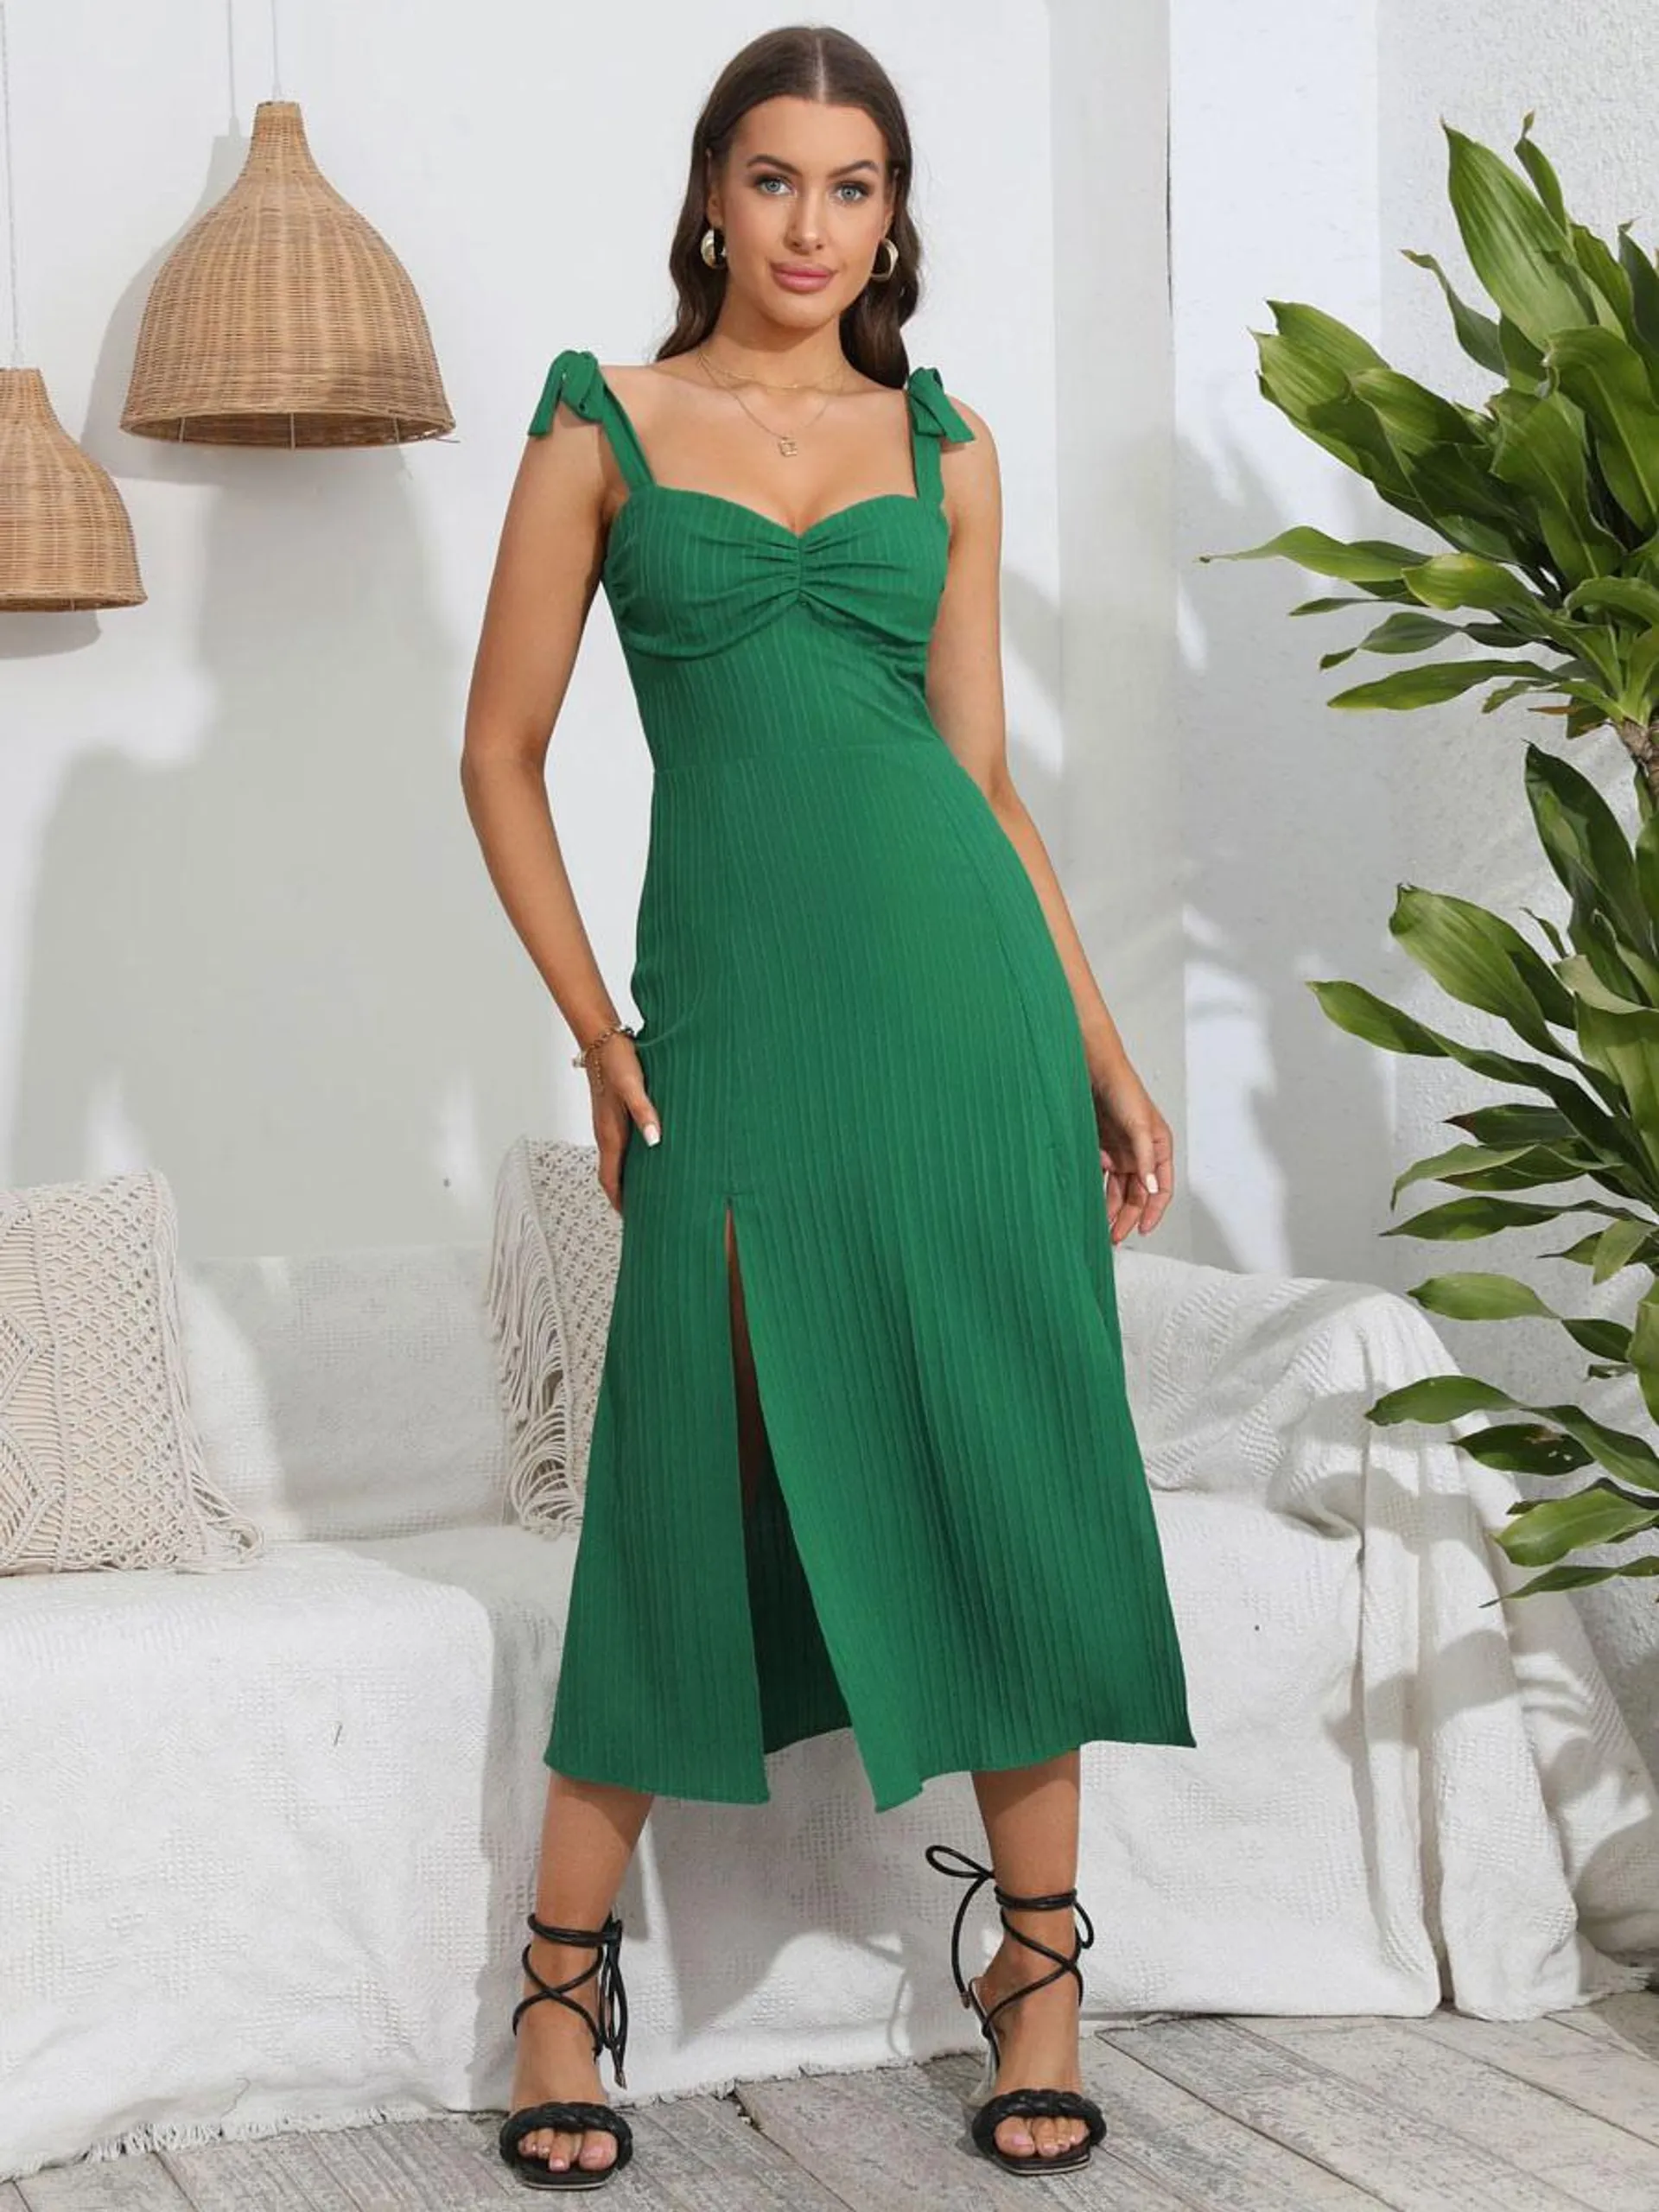 Summer Dress Sweetheart Neck Lace Up Backless Green Medium Beach Dress